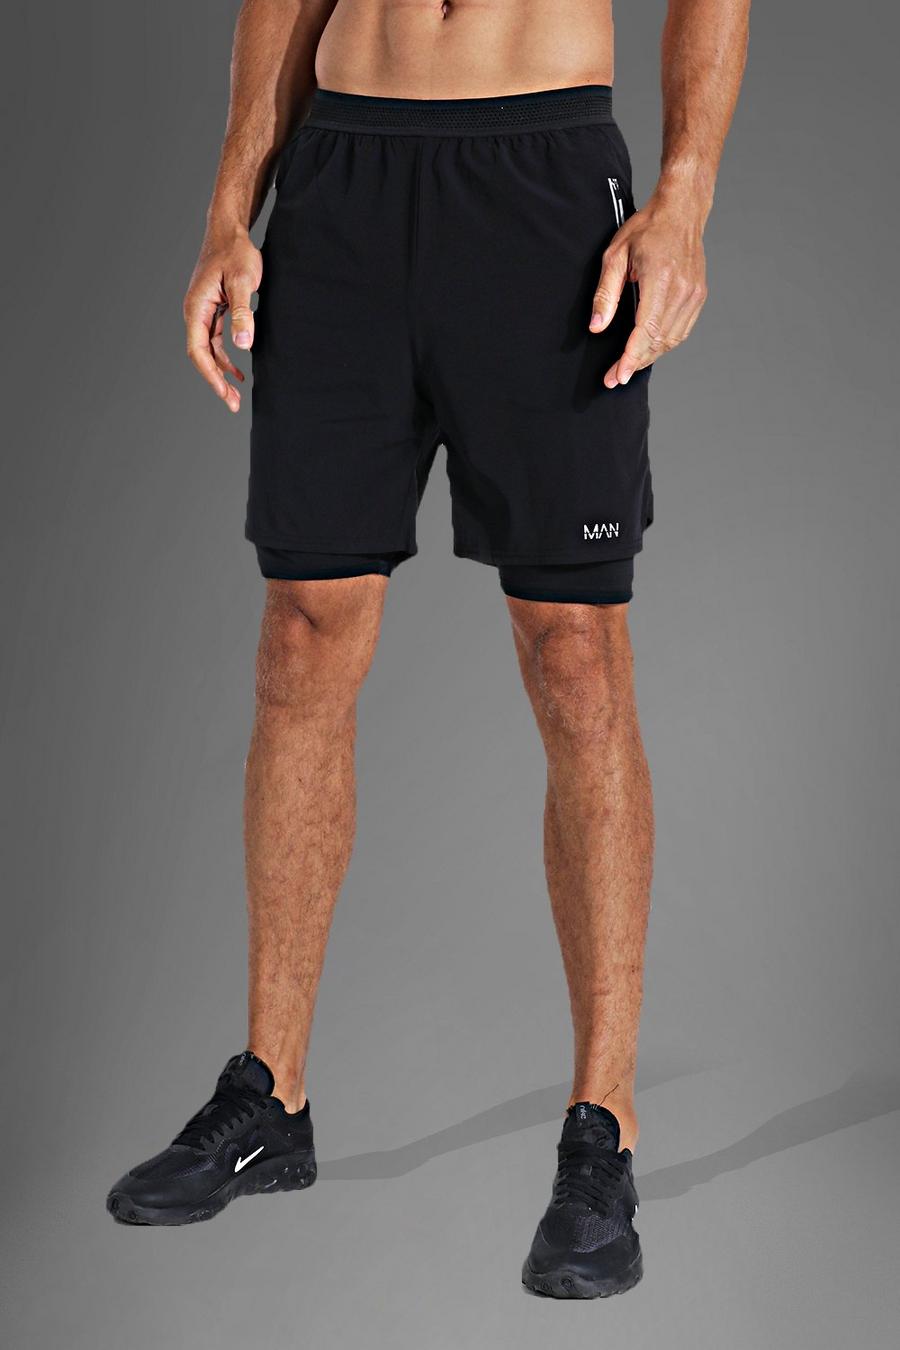 Pantalón corto Tall Active ligero 2 en 1 con colores en contraste, Black image number 1